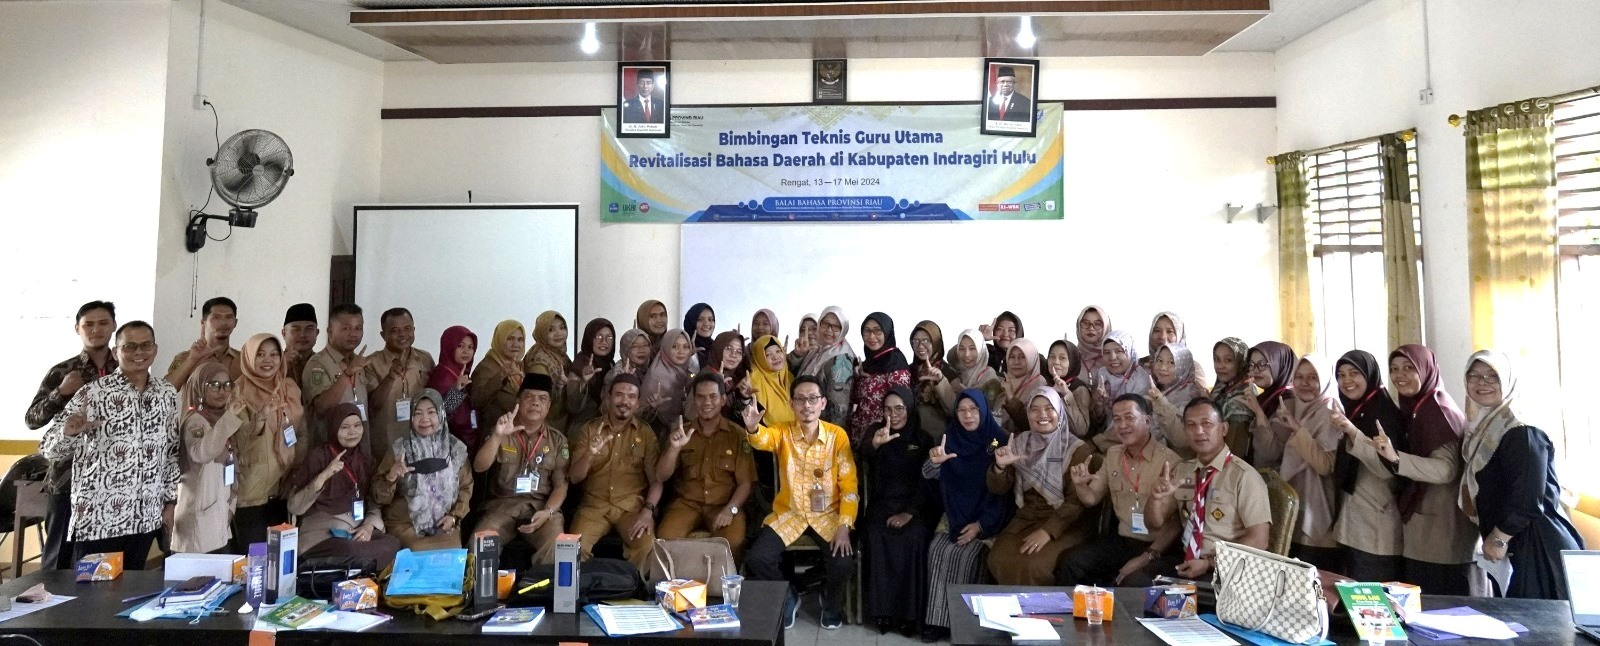 Indragiri Hulu sebagai Daerah Pertama Bimbingan Teknis Guru Master di Provinsi Riau